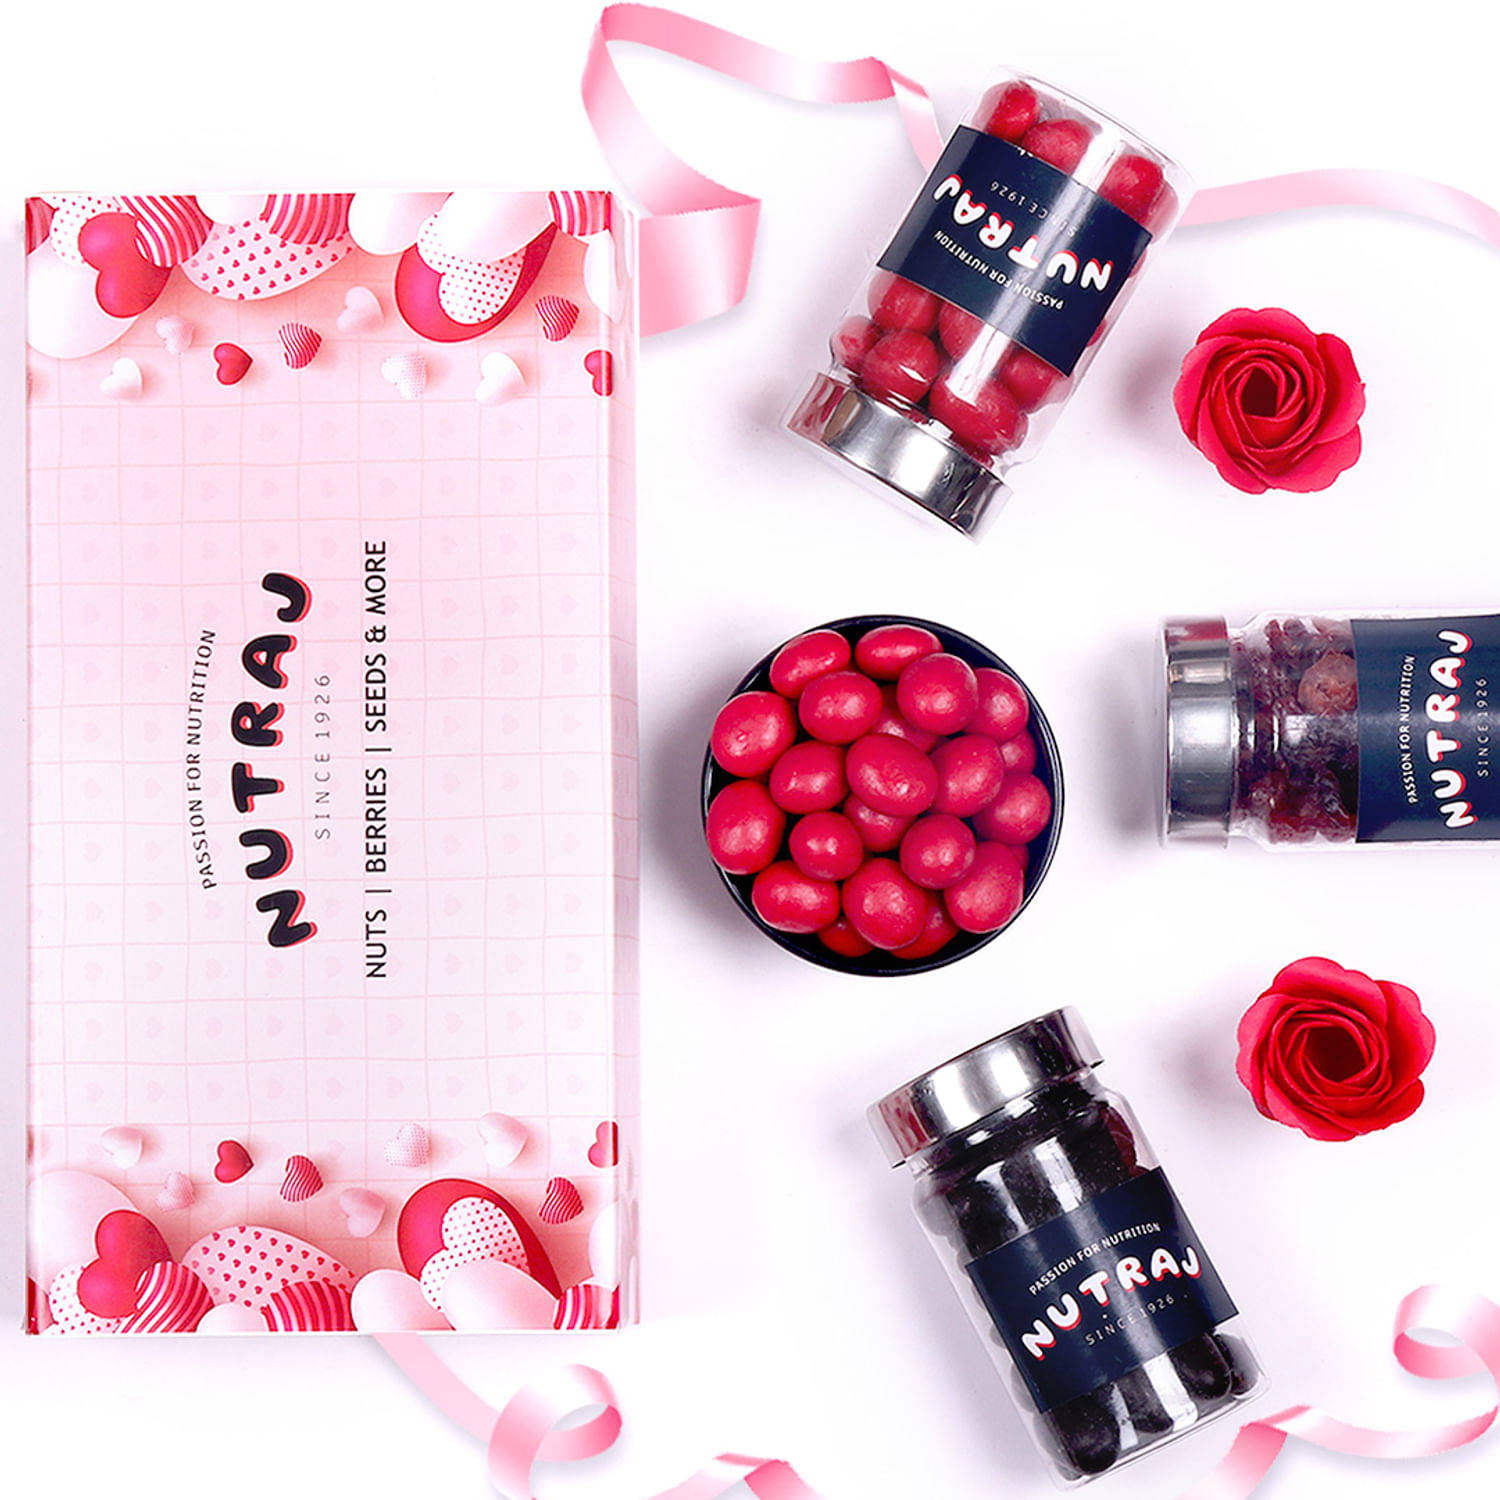 Chocoberry Love Magic - Valentine Gift Box